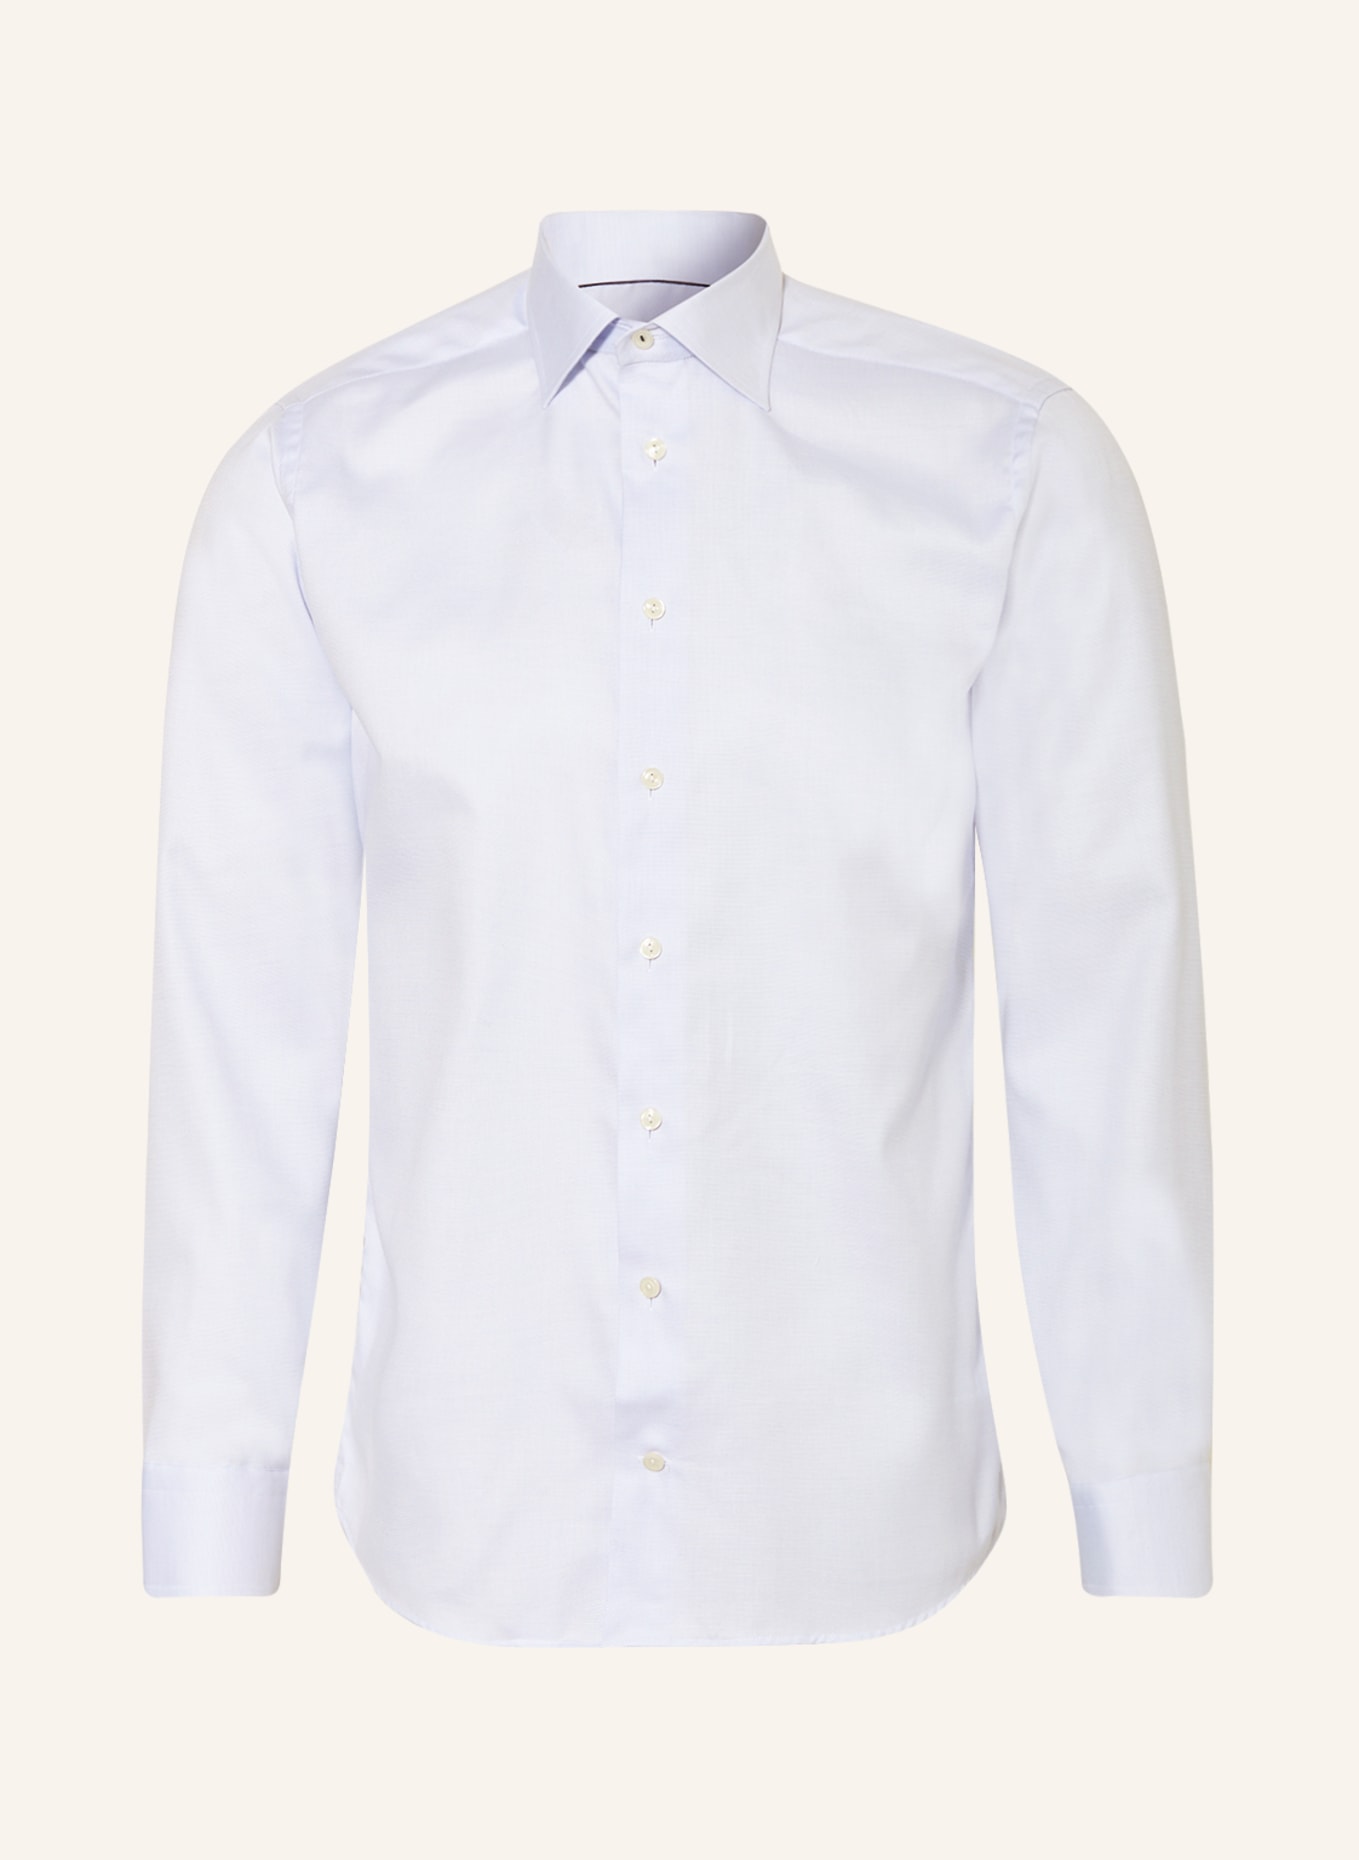 ETON Piqué shirt slim fit, Color: LIGHT BLUE (Image 1)